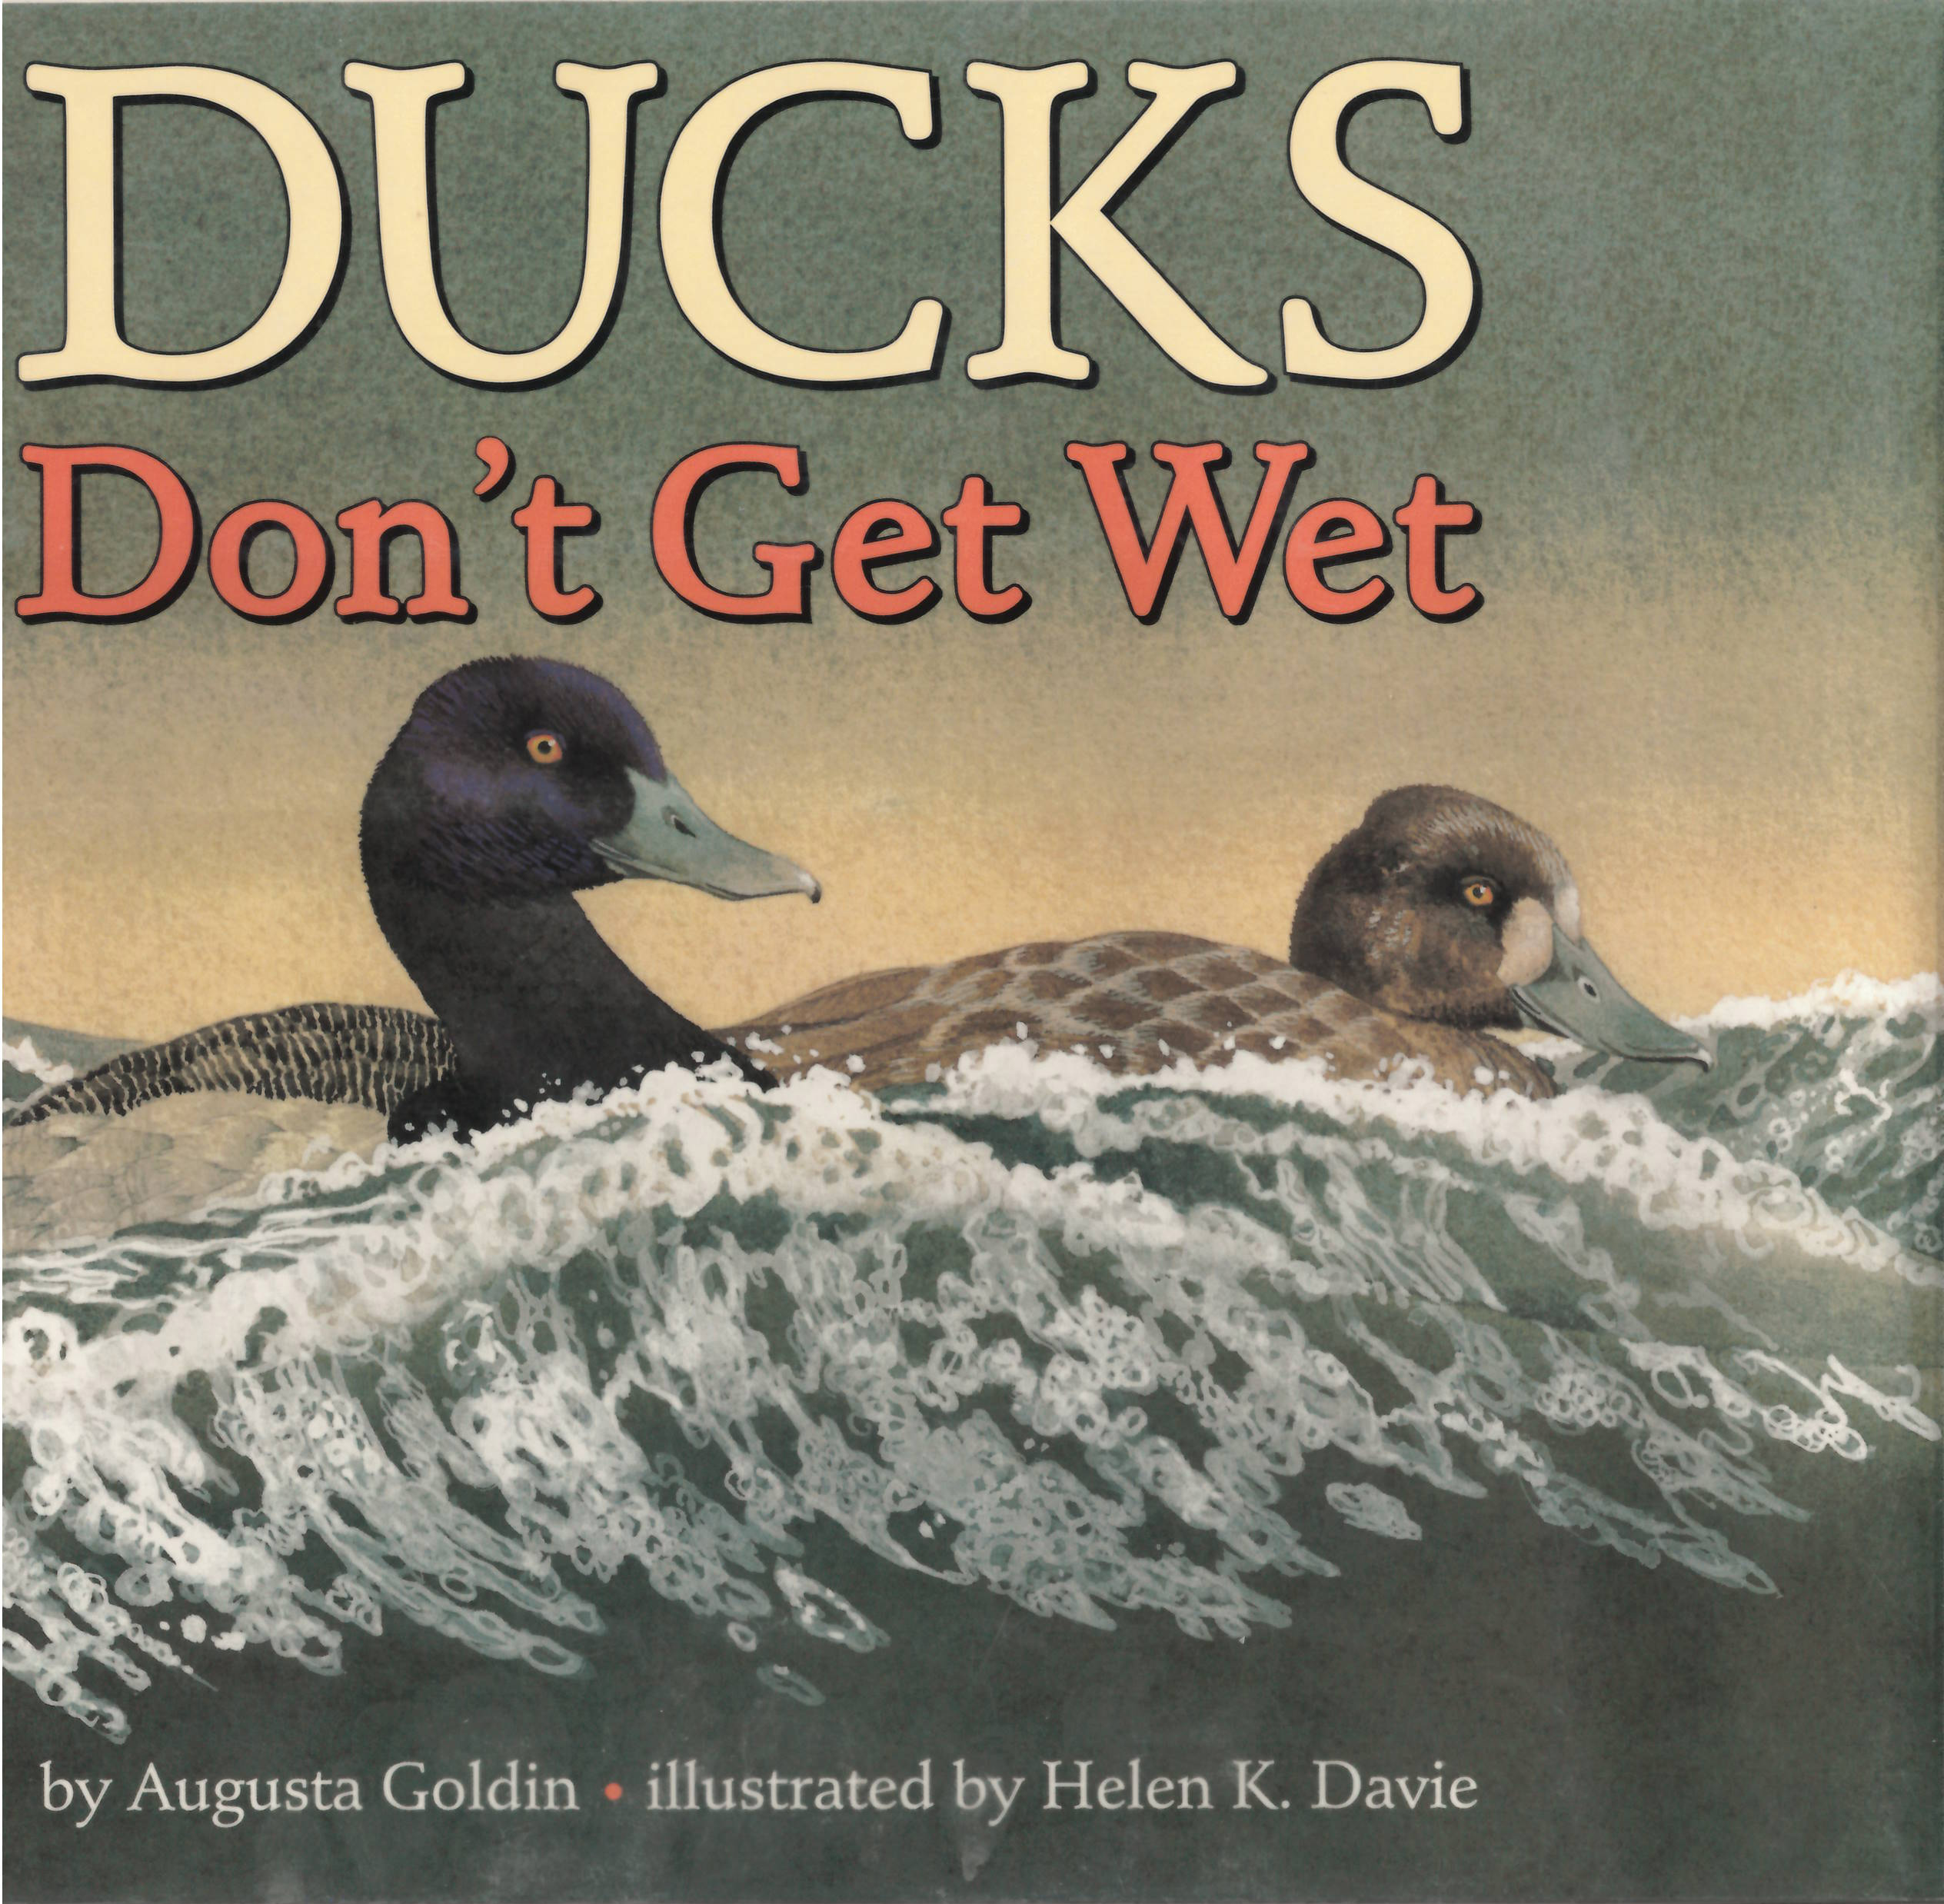 Ducks don't get wet